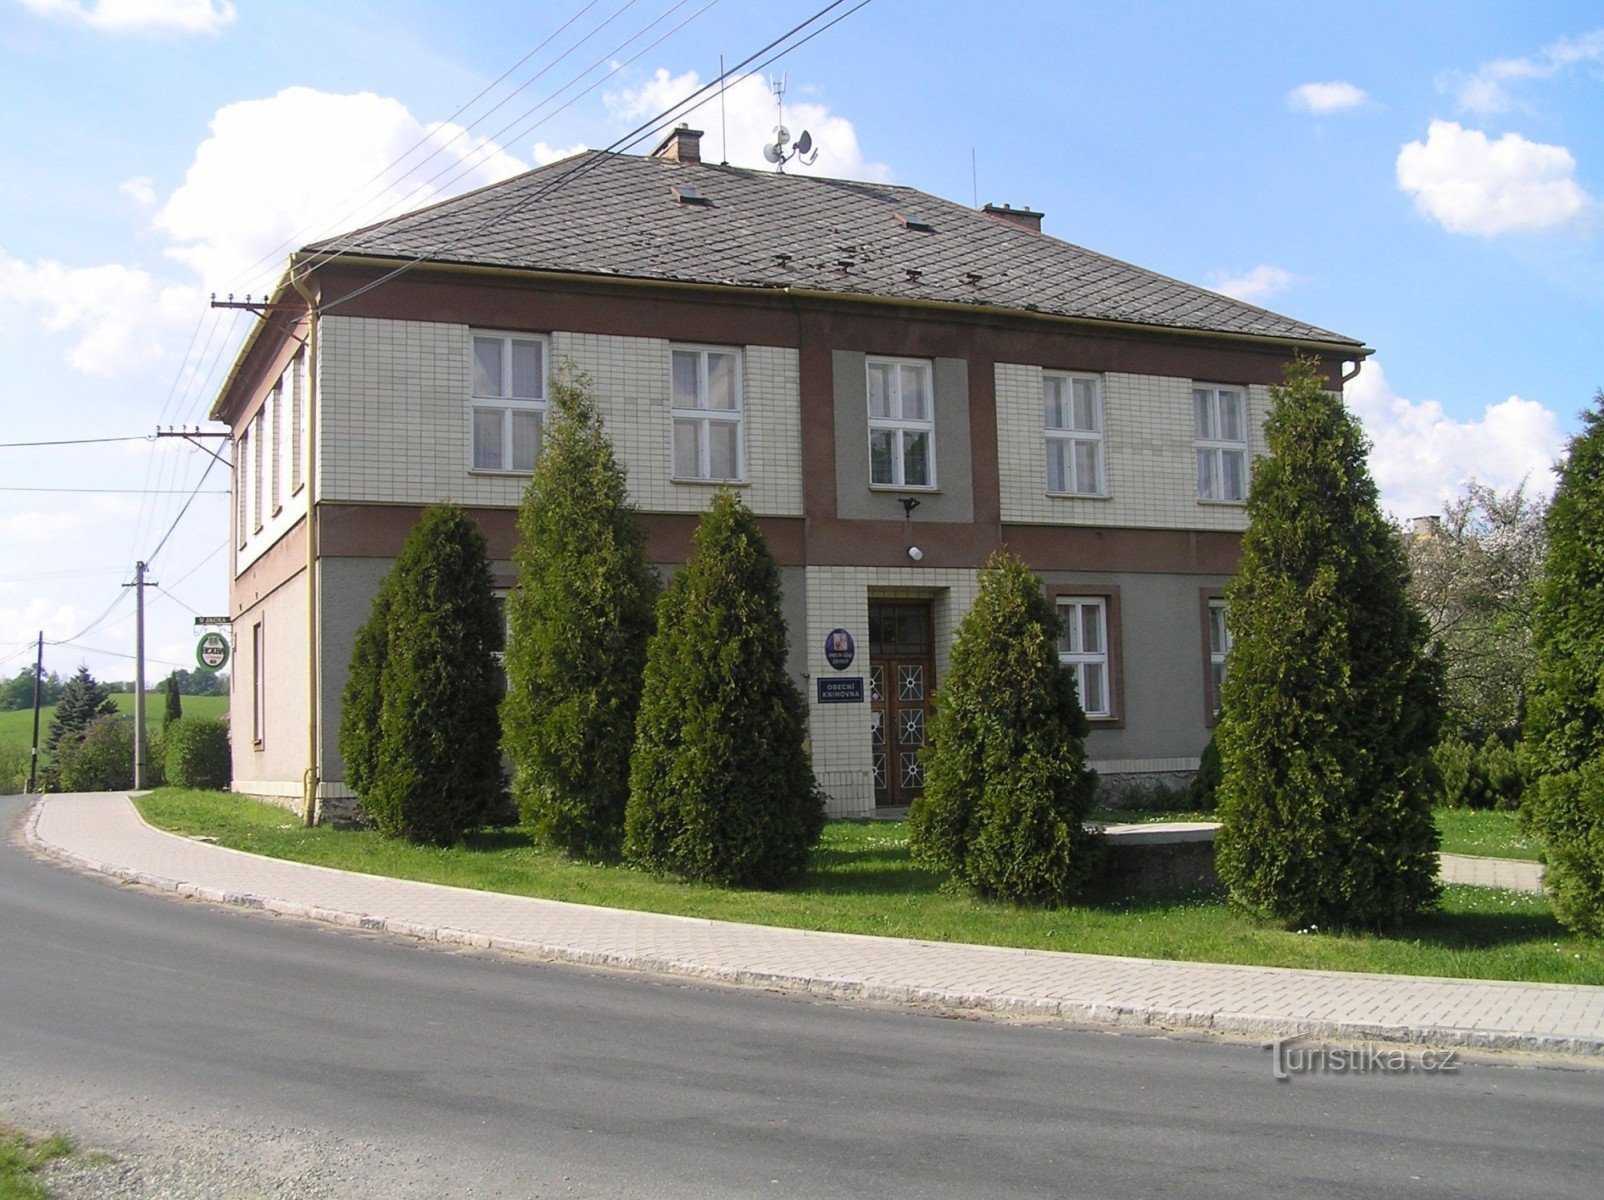 Ideale Anbindung - Gemeindeamt, Bibliothek und Kneipe.